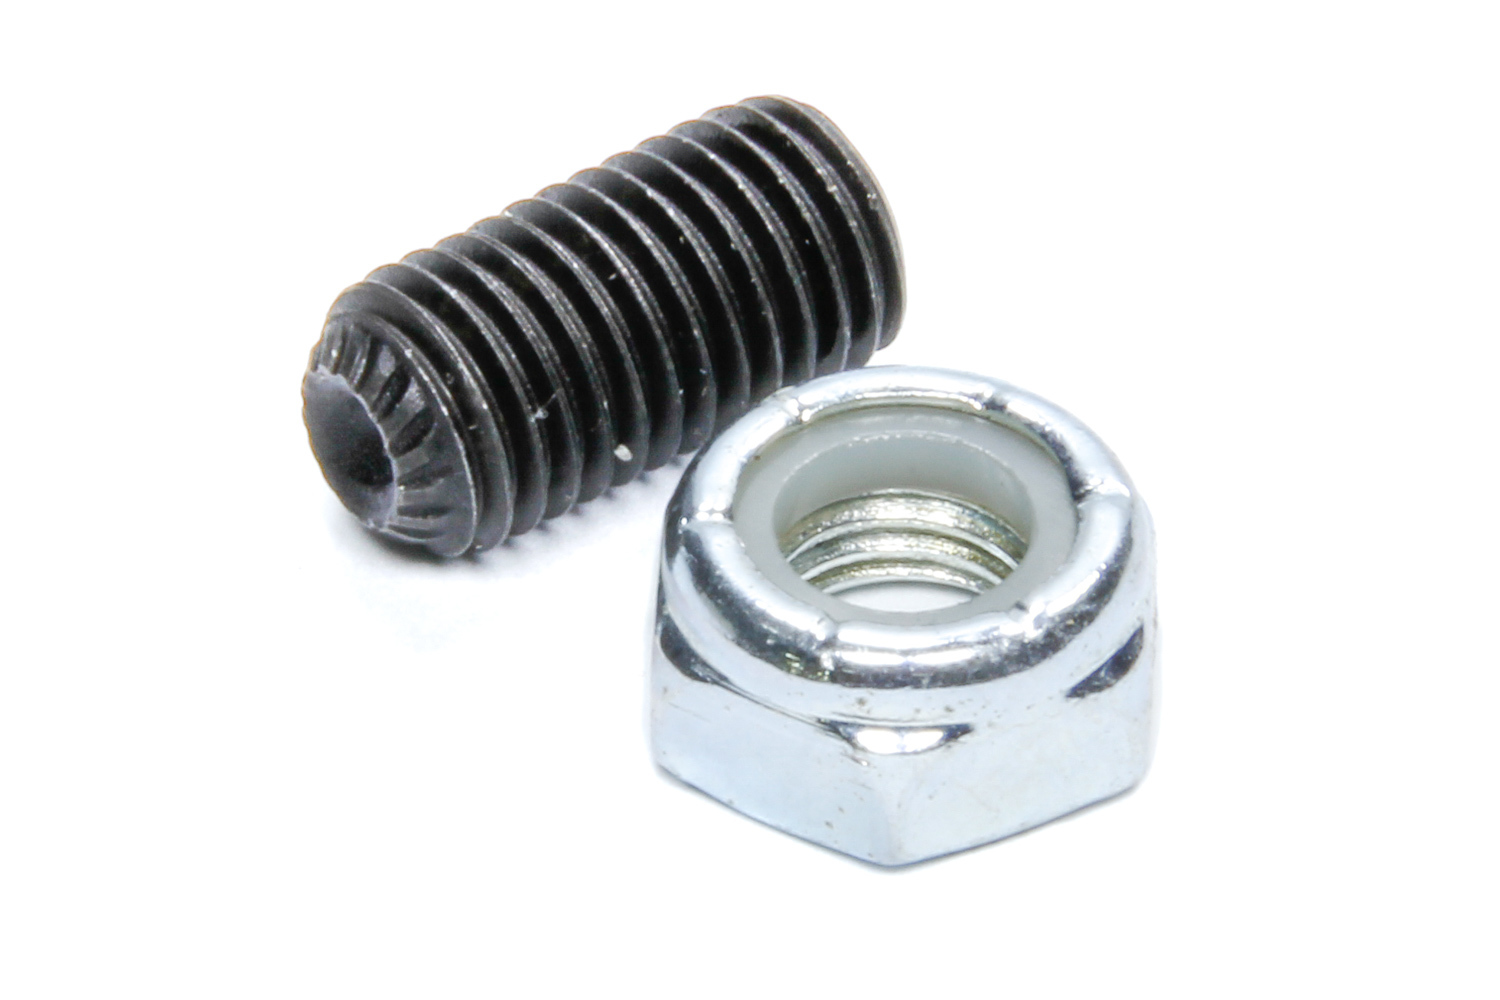 Set Screw - 5/16-24 in Thread - Allen Head - Nut Included - Steel - Sweet Steering Universal Joint - Each